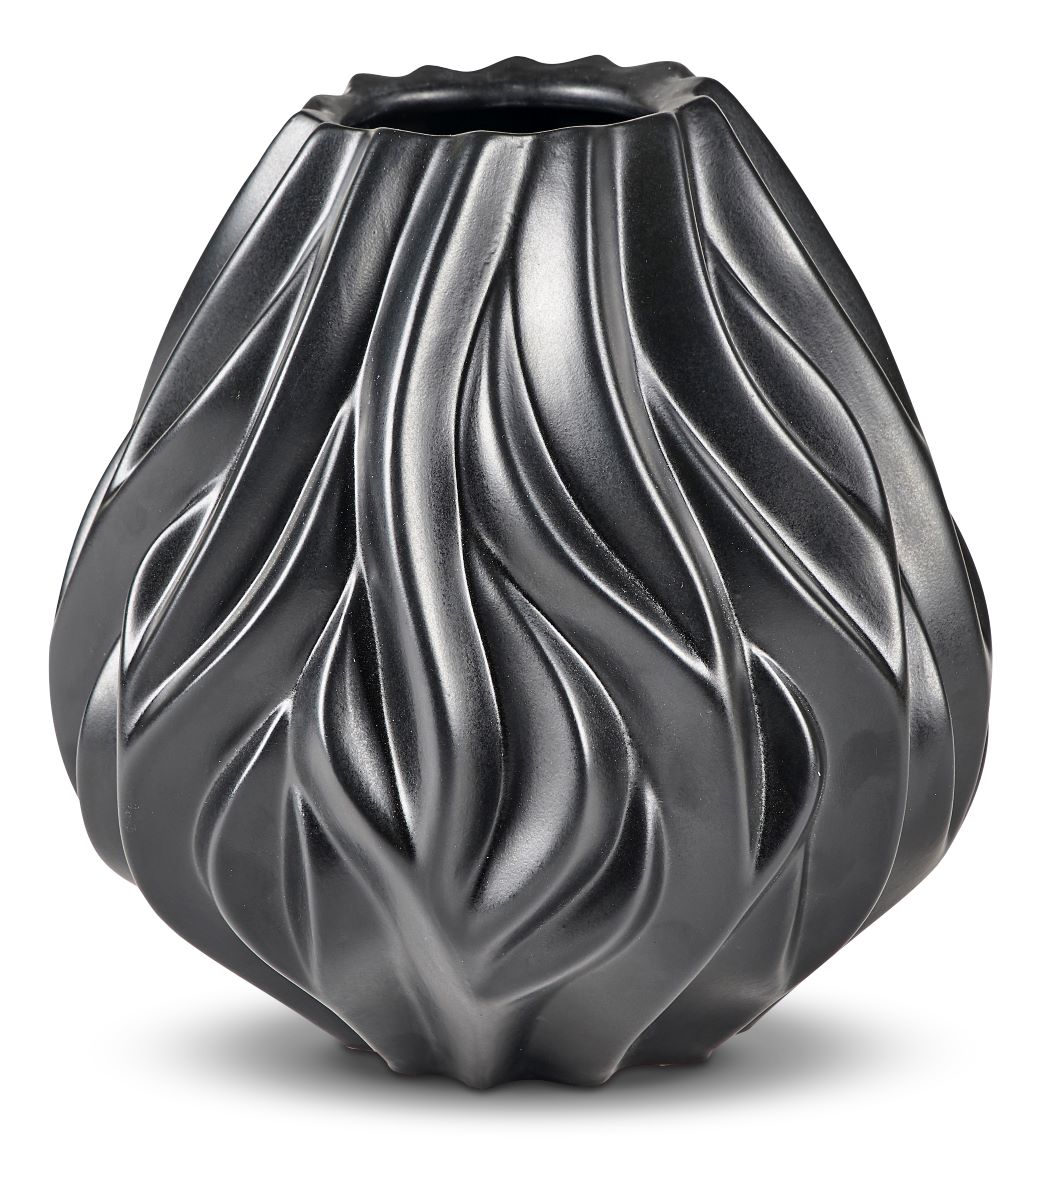 Vase Flame 19 cm Sort Morsø